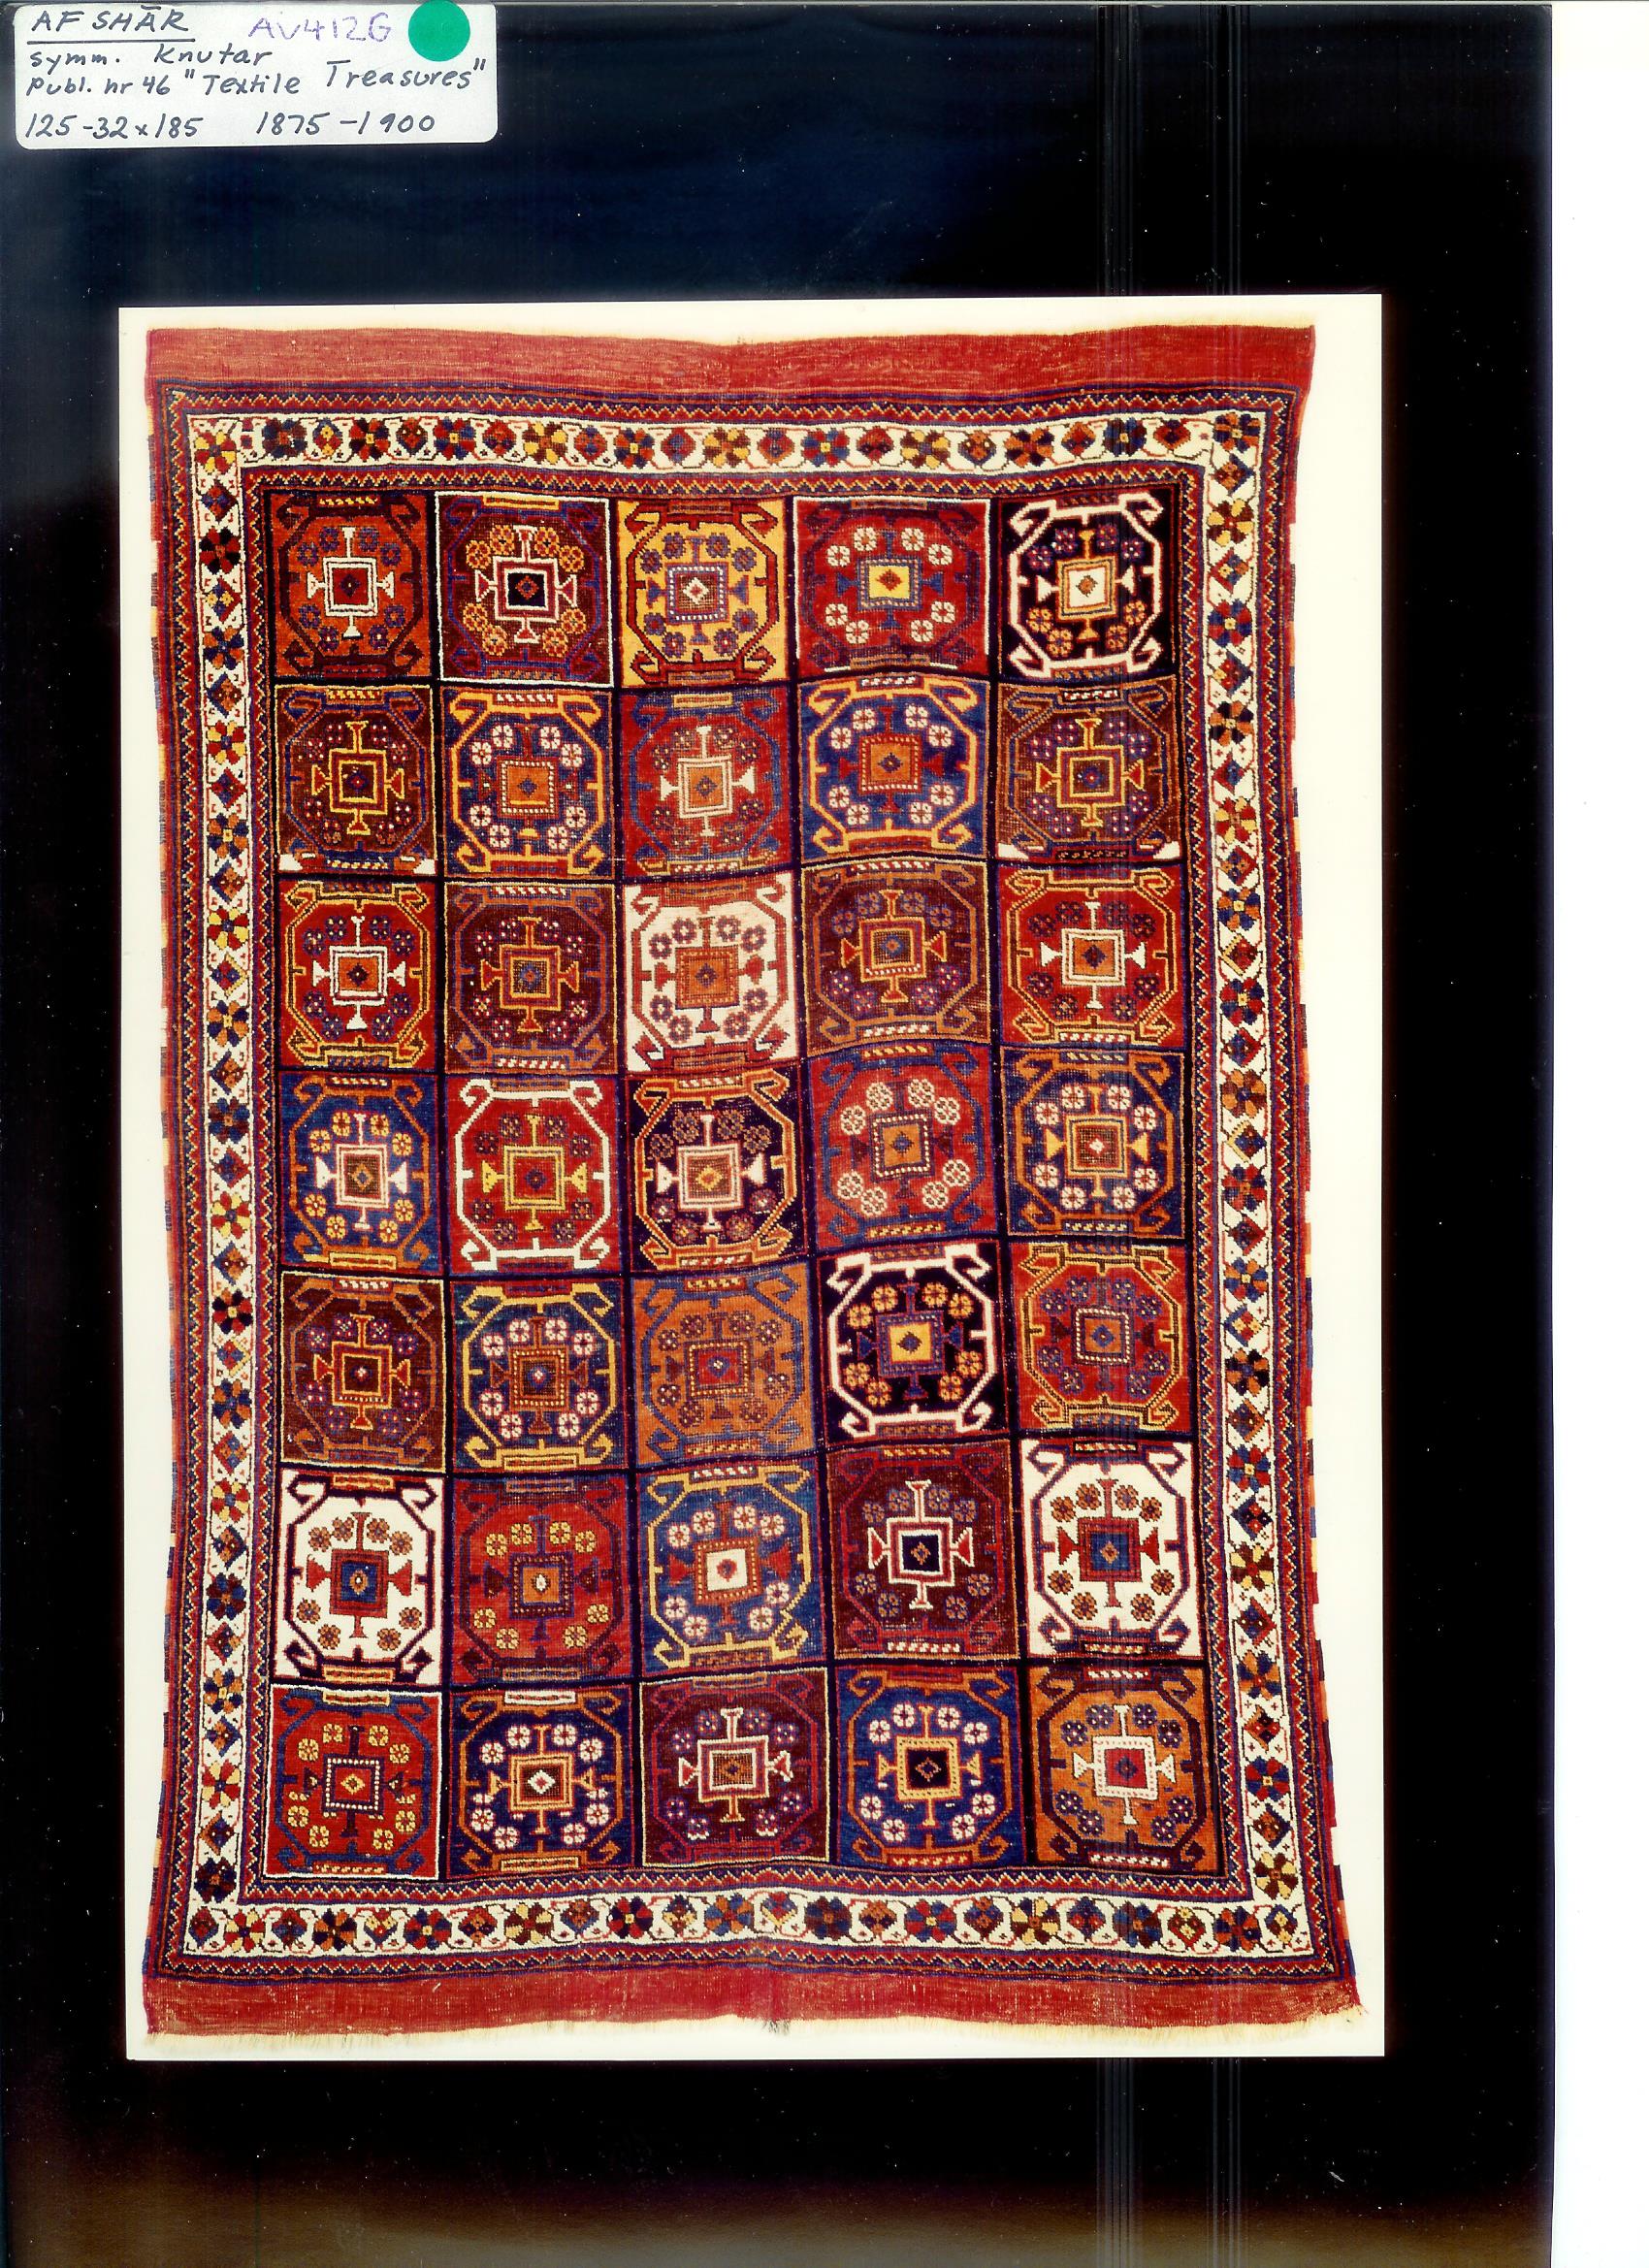 Afshar 1,25-32x1,85 m 1875-1900,